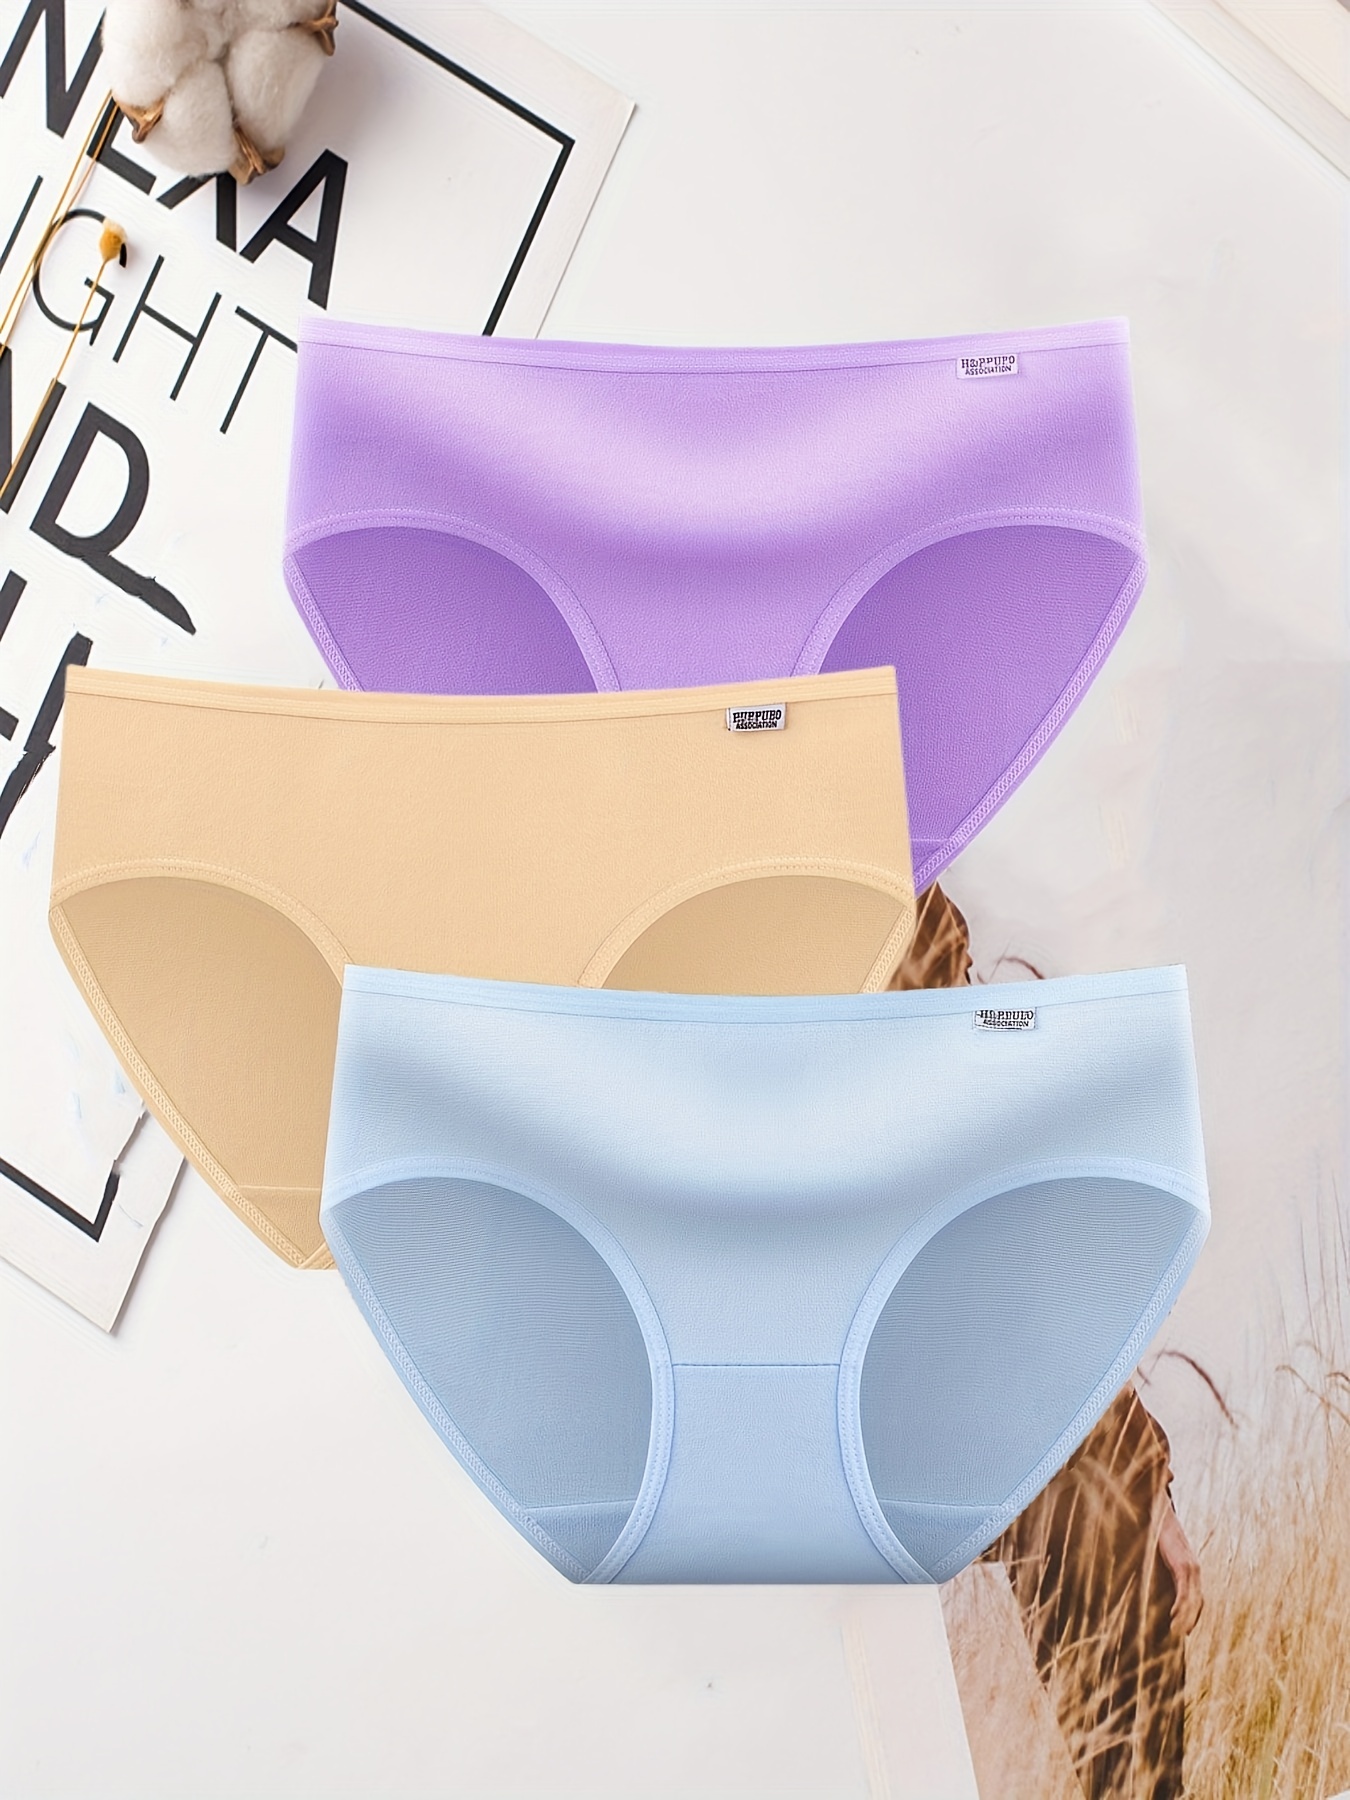 Comfy Women's Briefs Underwear - Comfy Panty - Ladies Panty